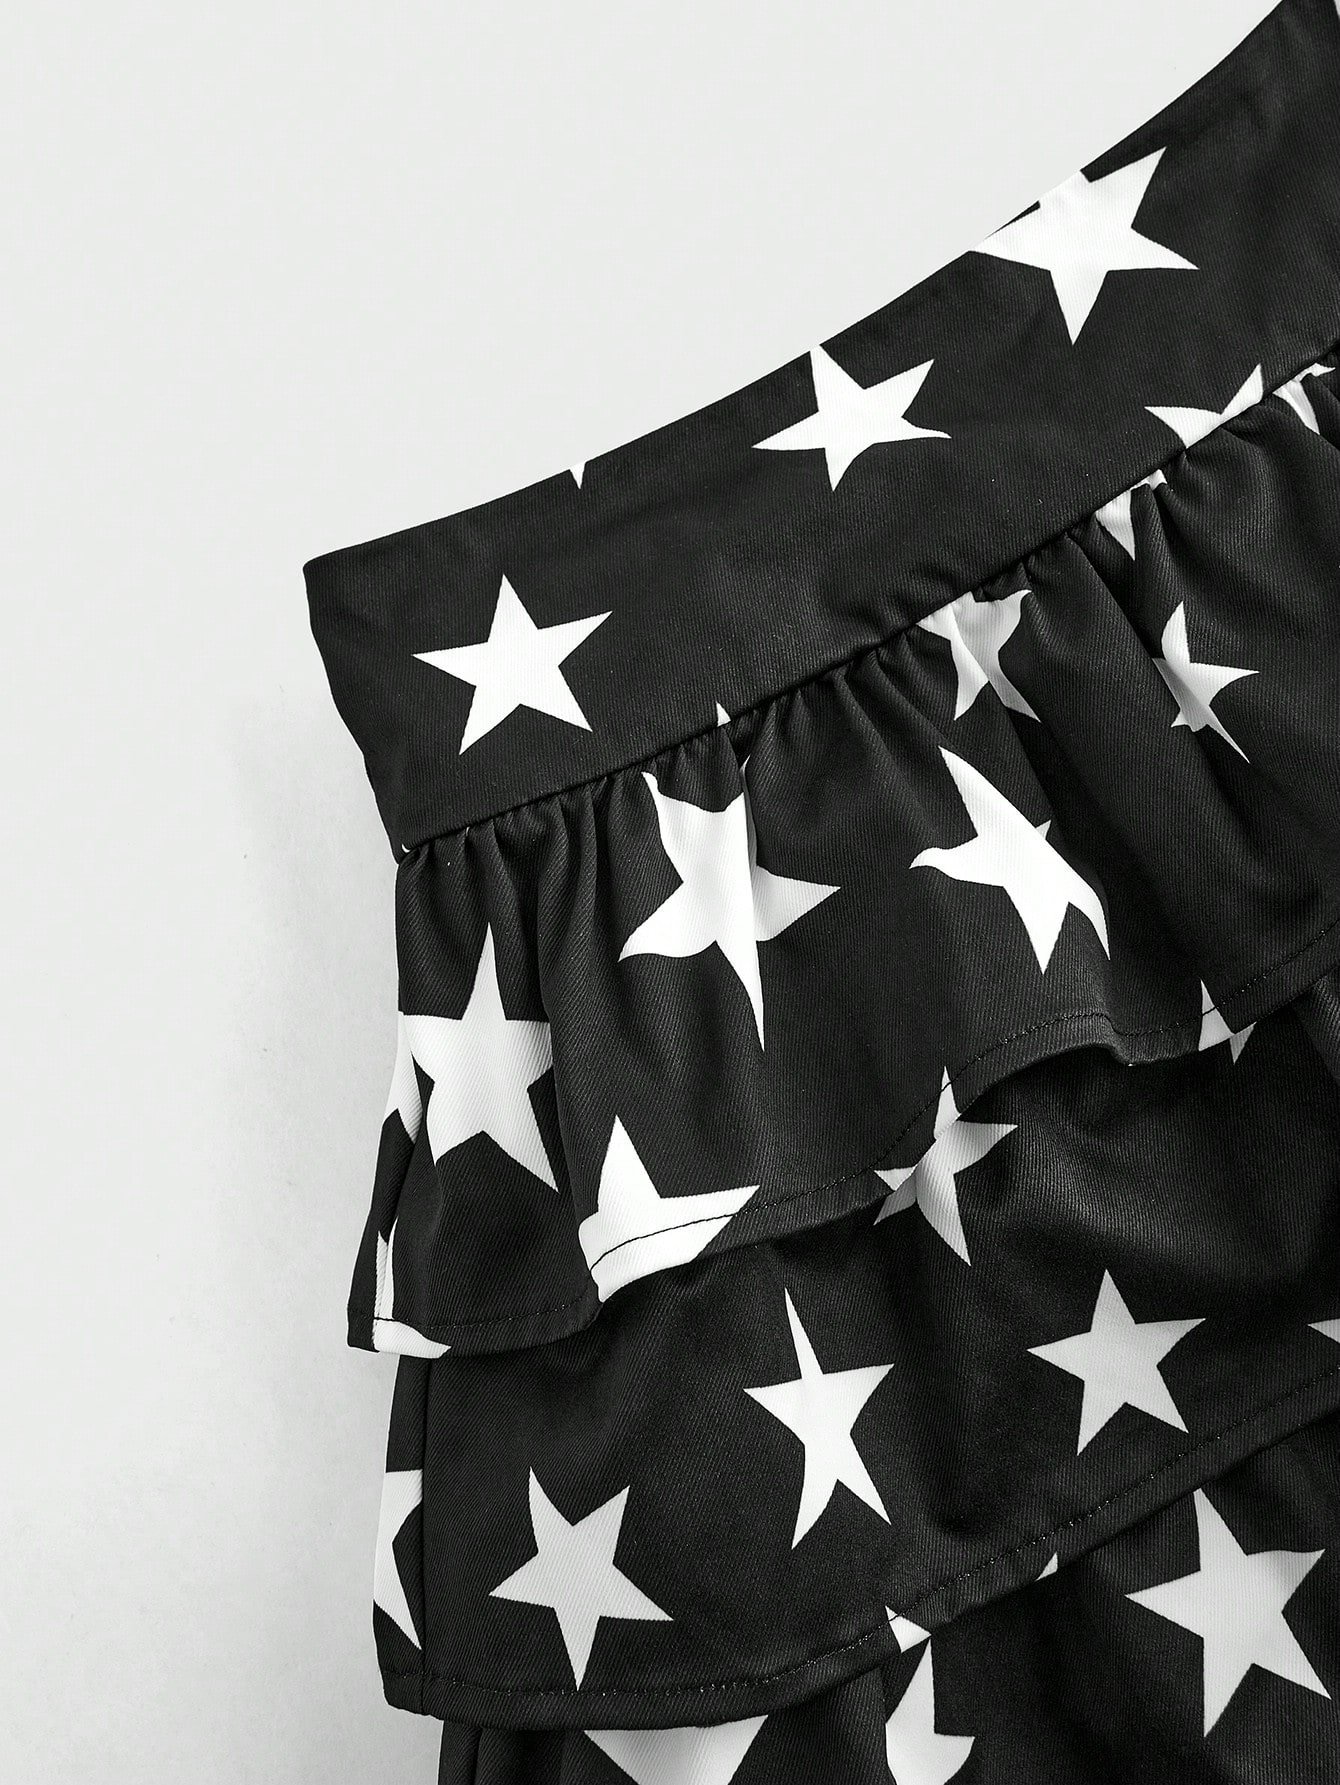 7月4日 アメリカ 女性の星プリント 黒色 ミニショートパンツ